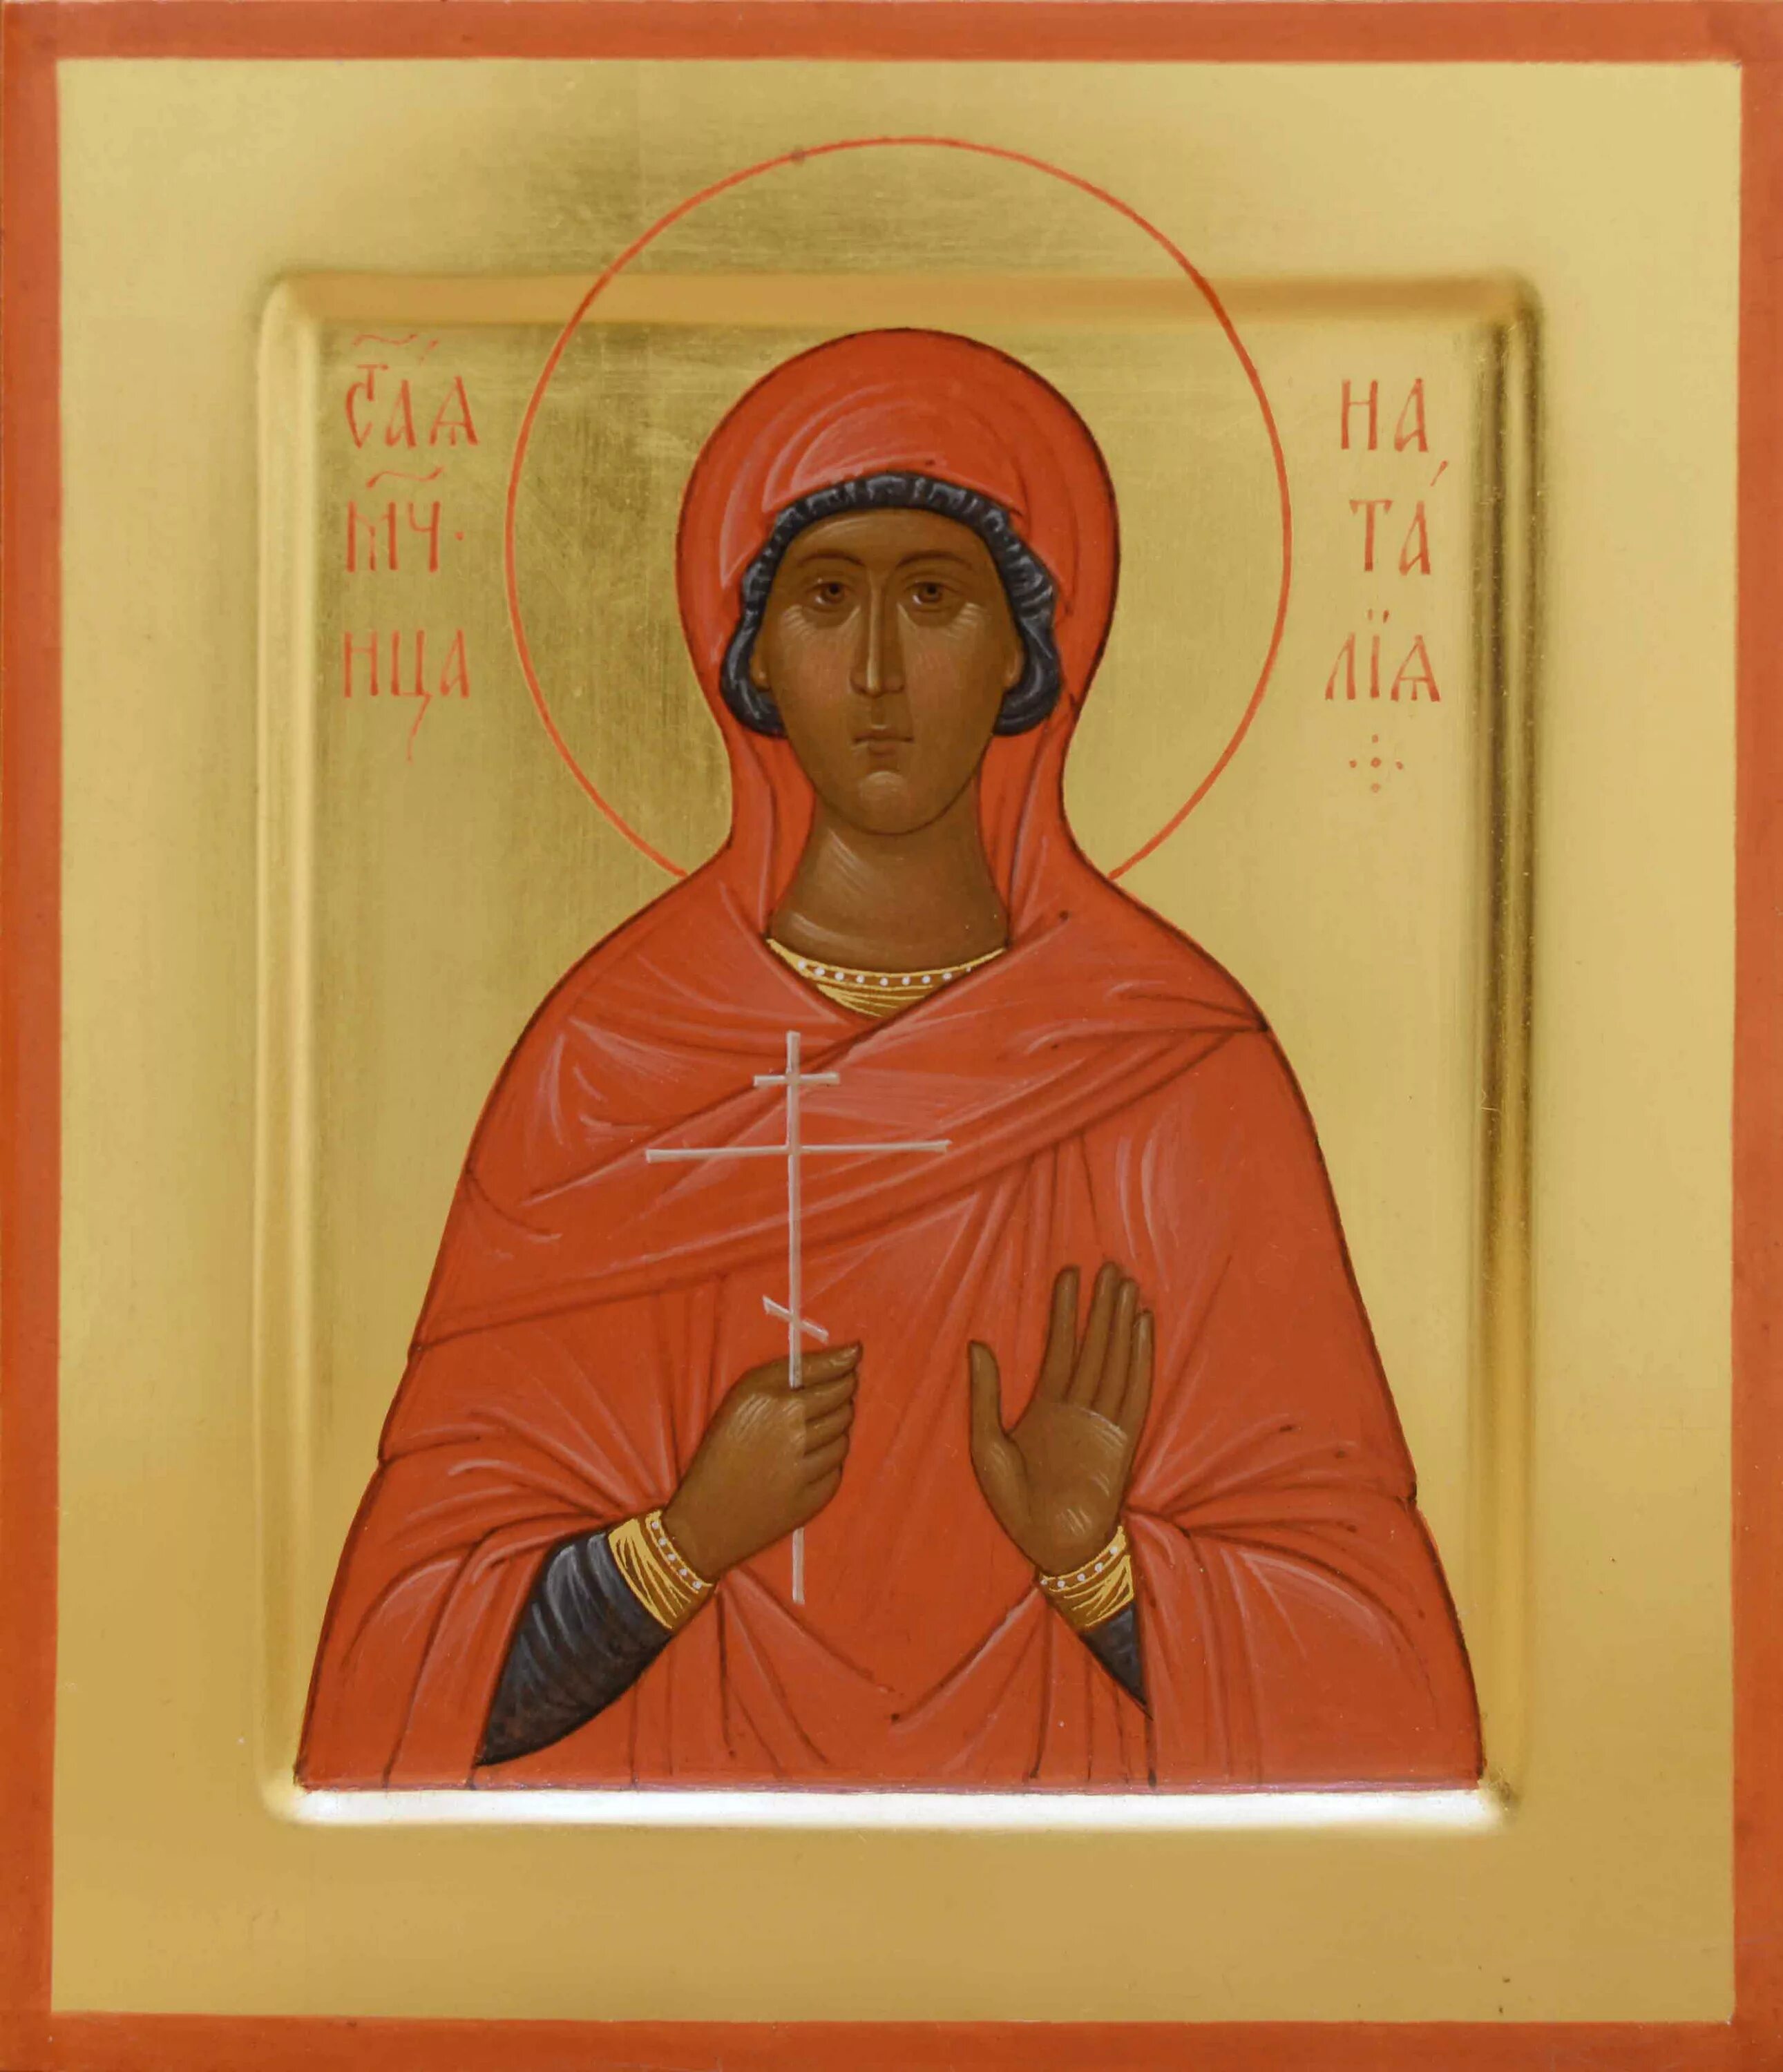 Св ма. Икона Святой мученицы Натальи.